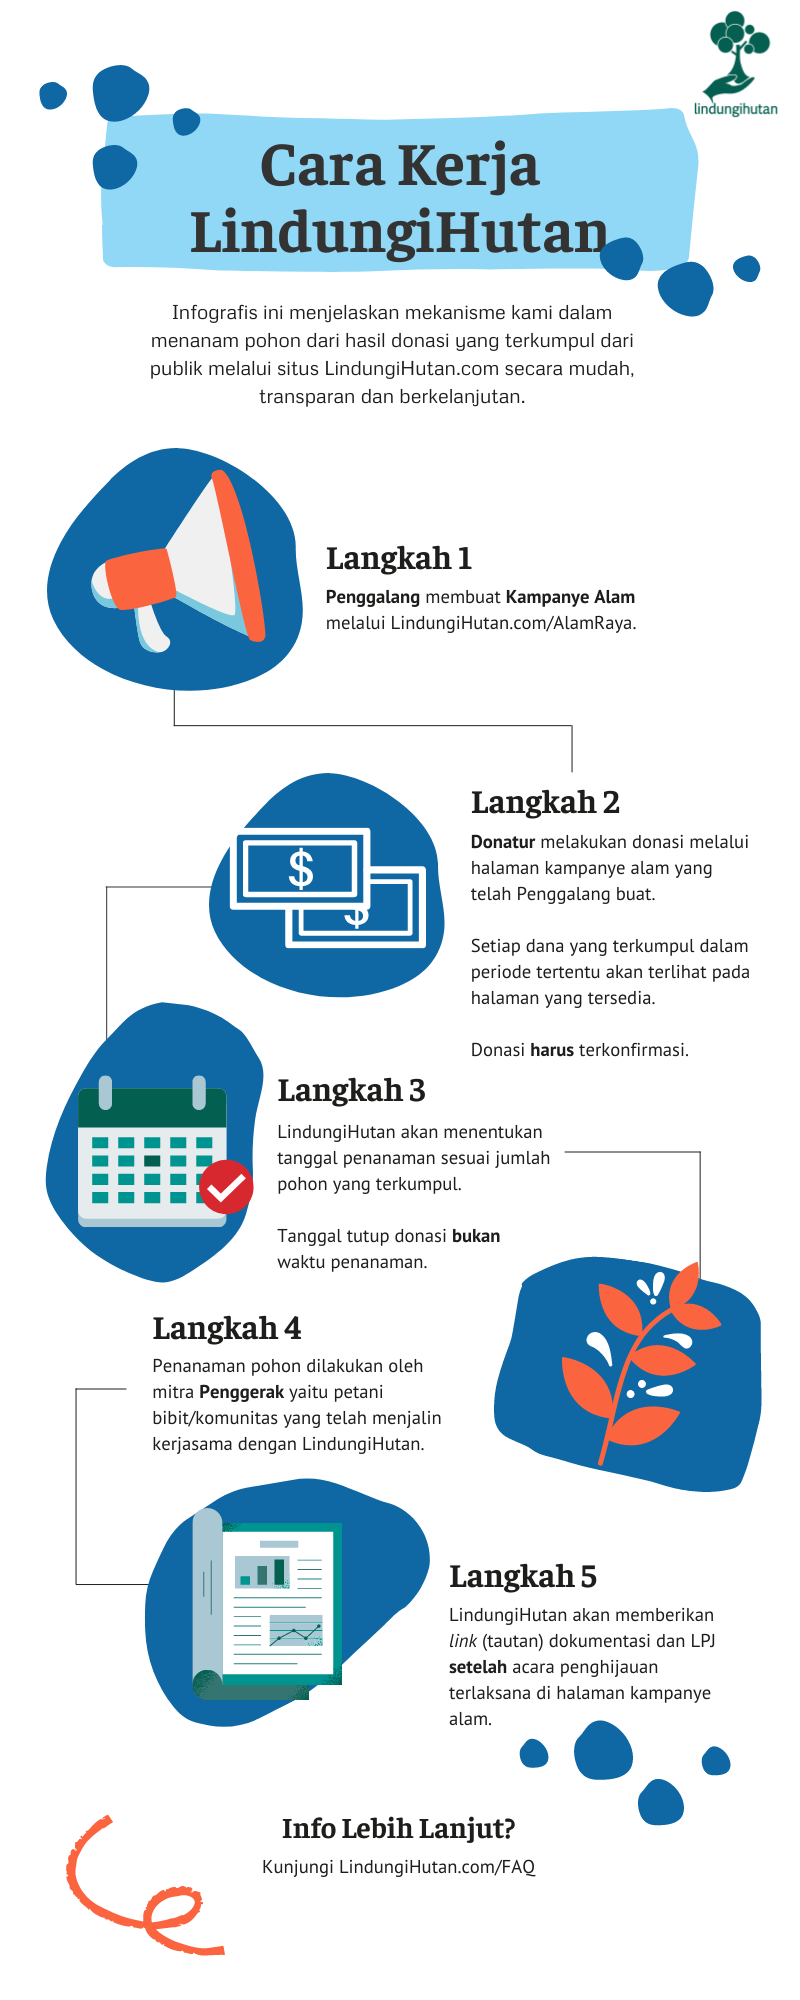 Infografis mekanisme cara pengumpulan donasi dan penggalangan dana untuk penghijauan di Indonesia melalui LindungiHutan